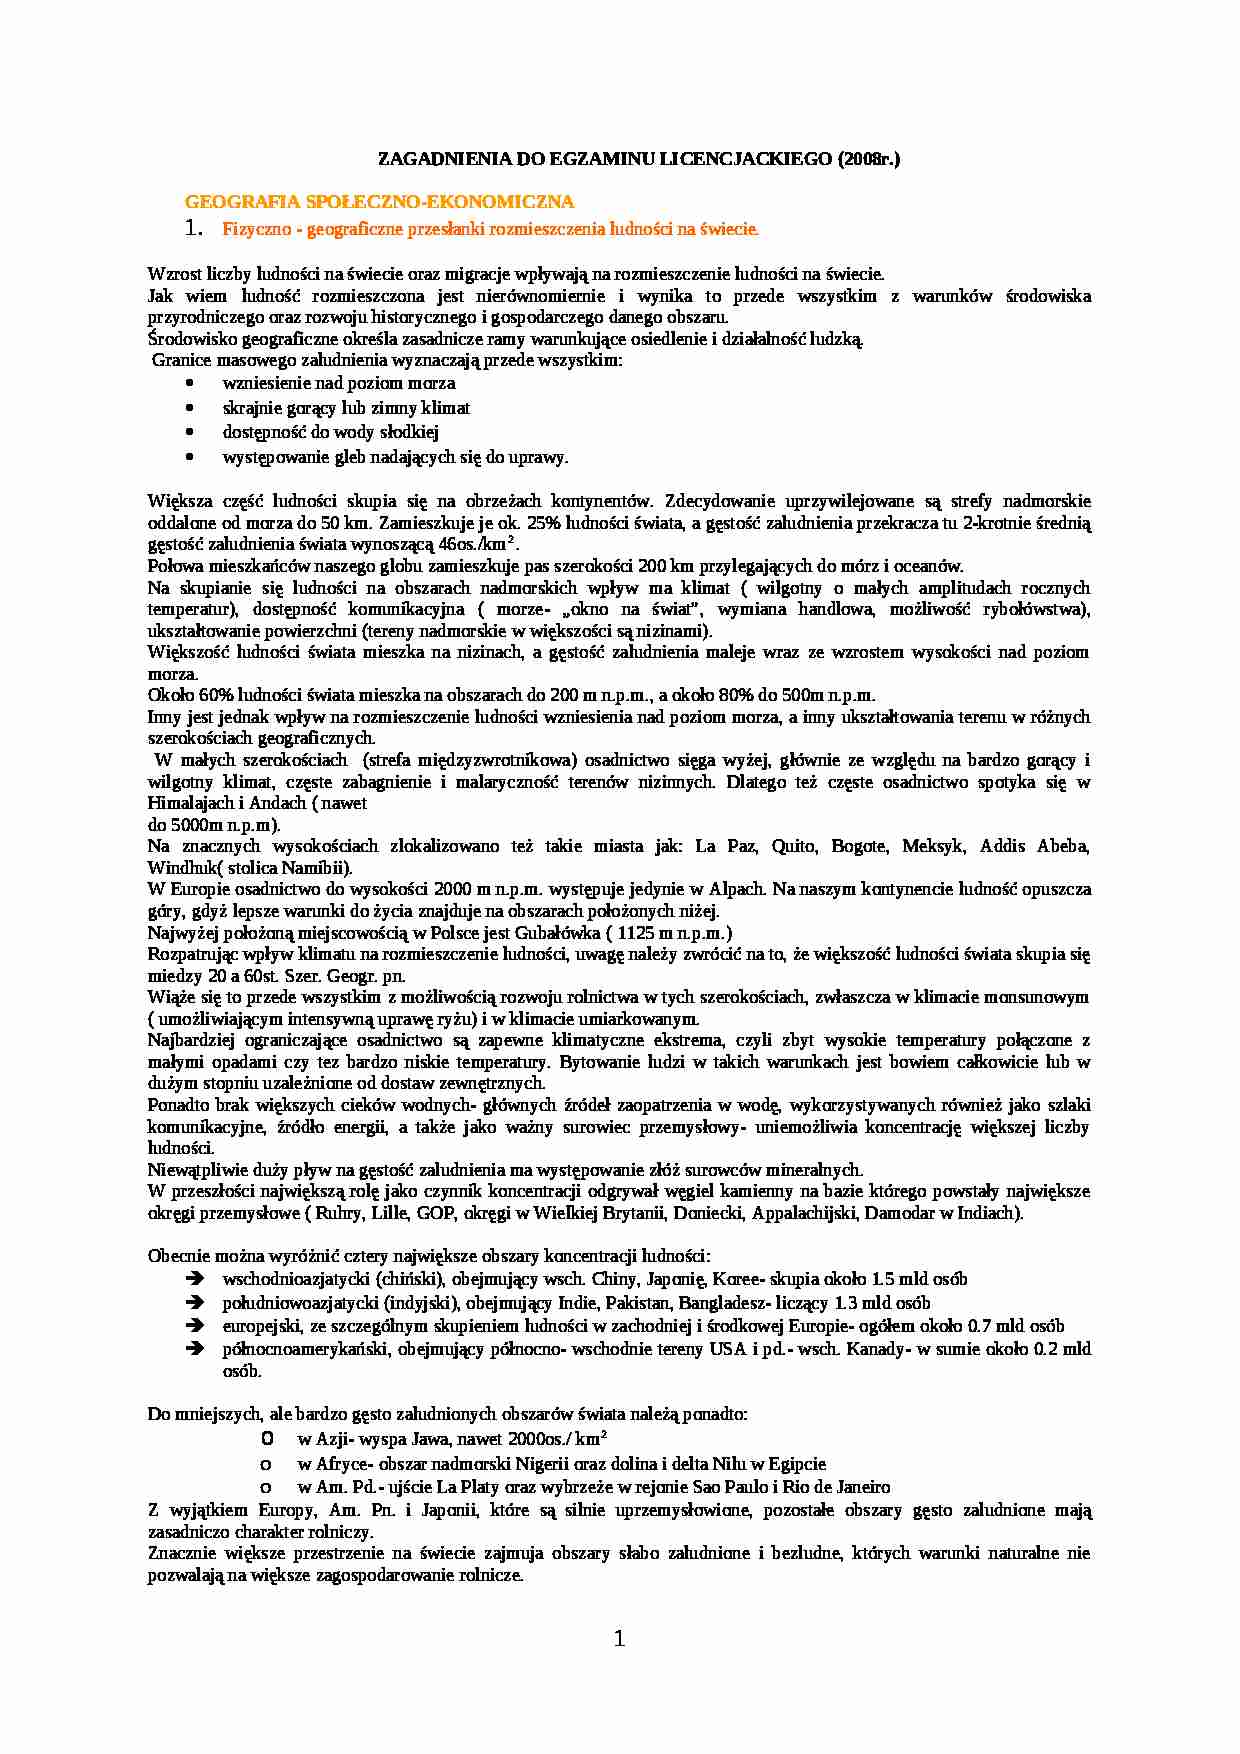 Zagadnienia na egzamin licencjacki 2008 - strona 1